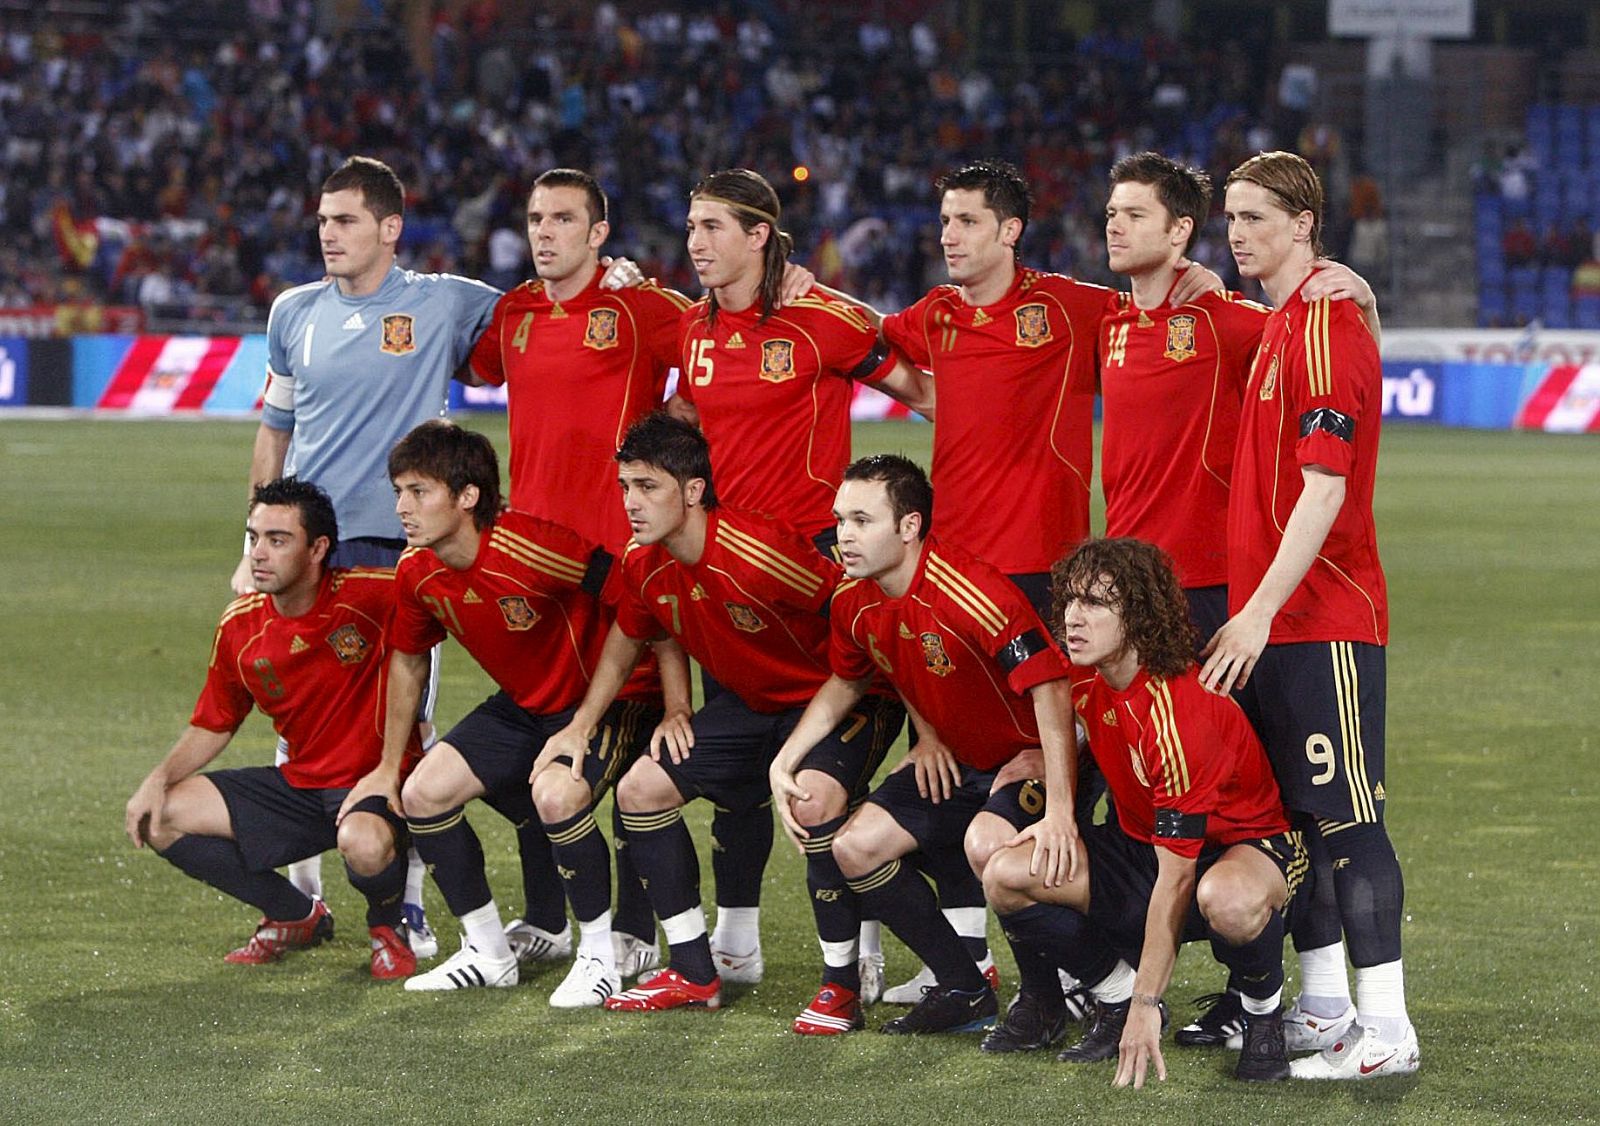 Equipo titular de España en el partido amistoso frente a Perú jugado en el Nuevo Colombino de Huelva.